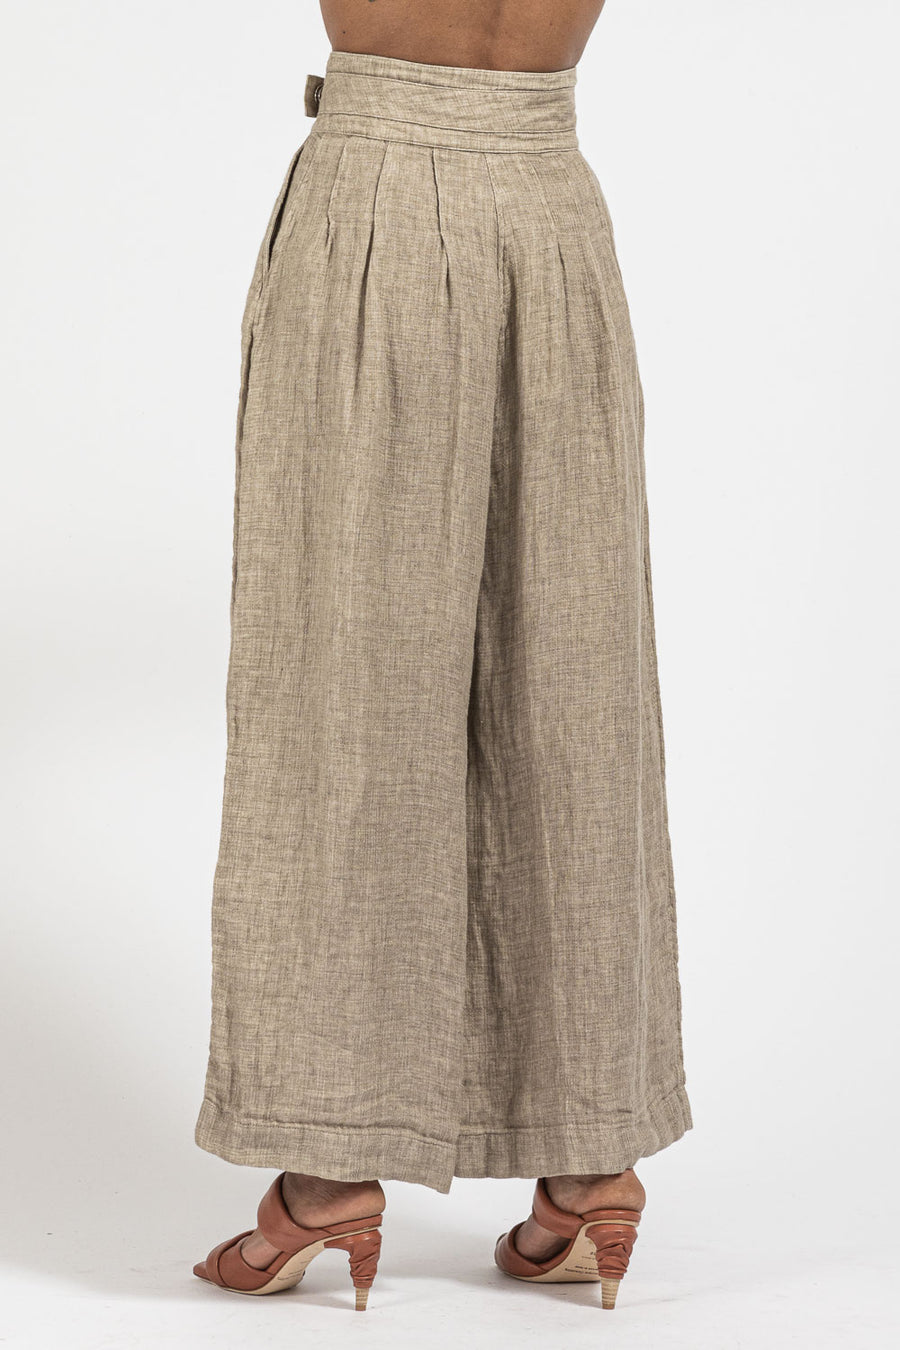 Pantalone NU Black da donna in lino e cotone color sand